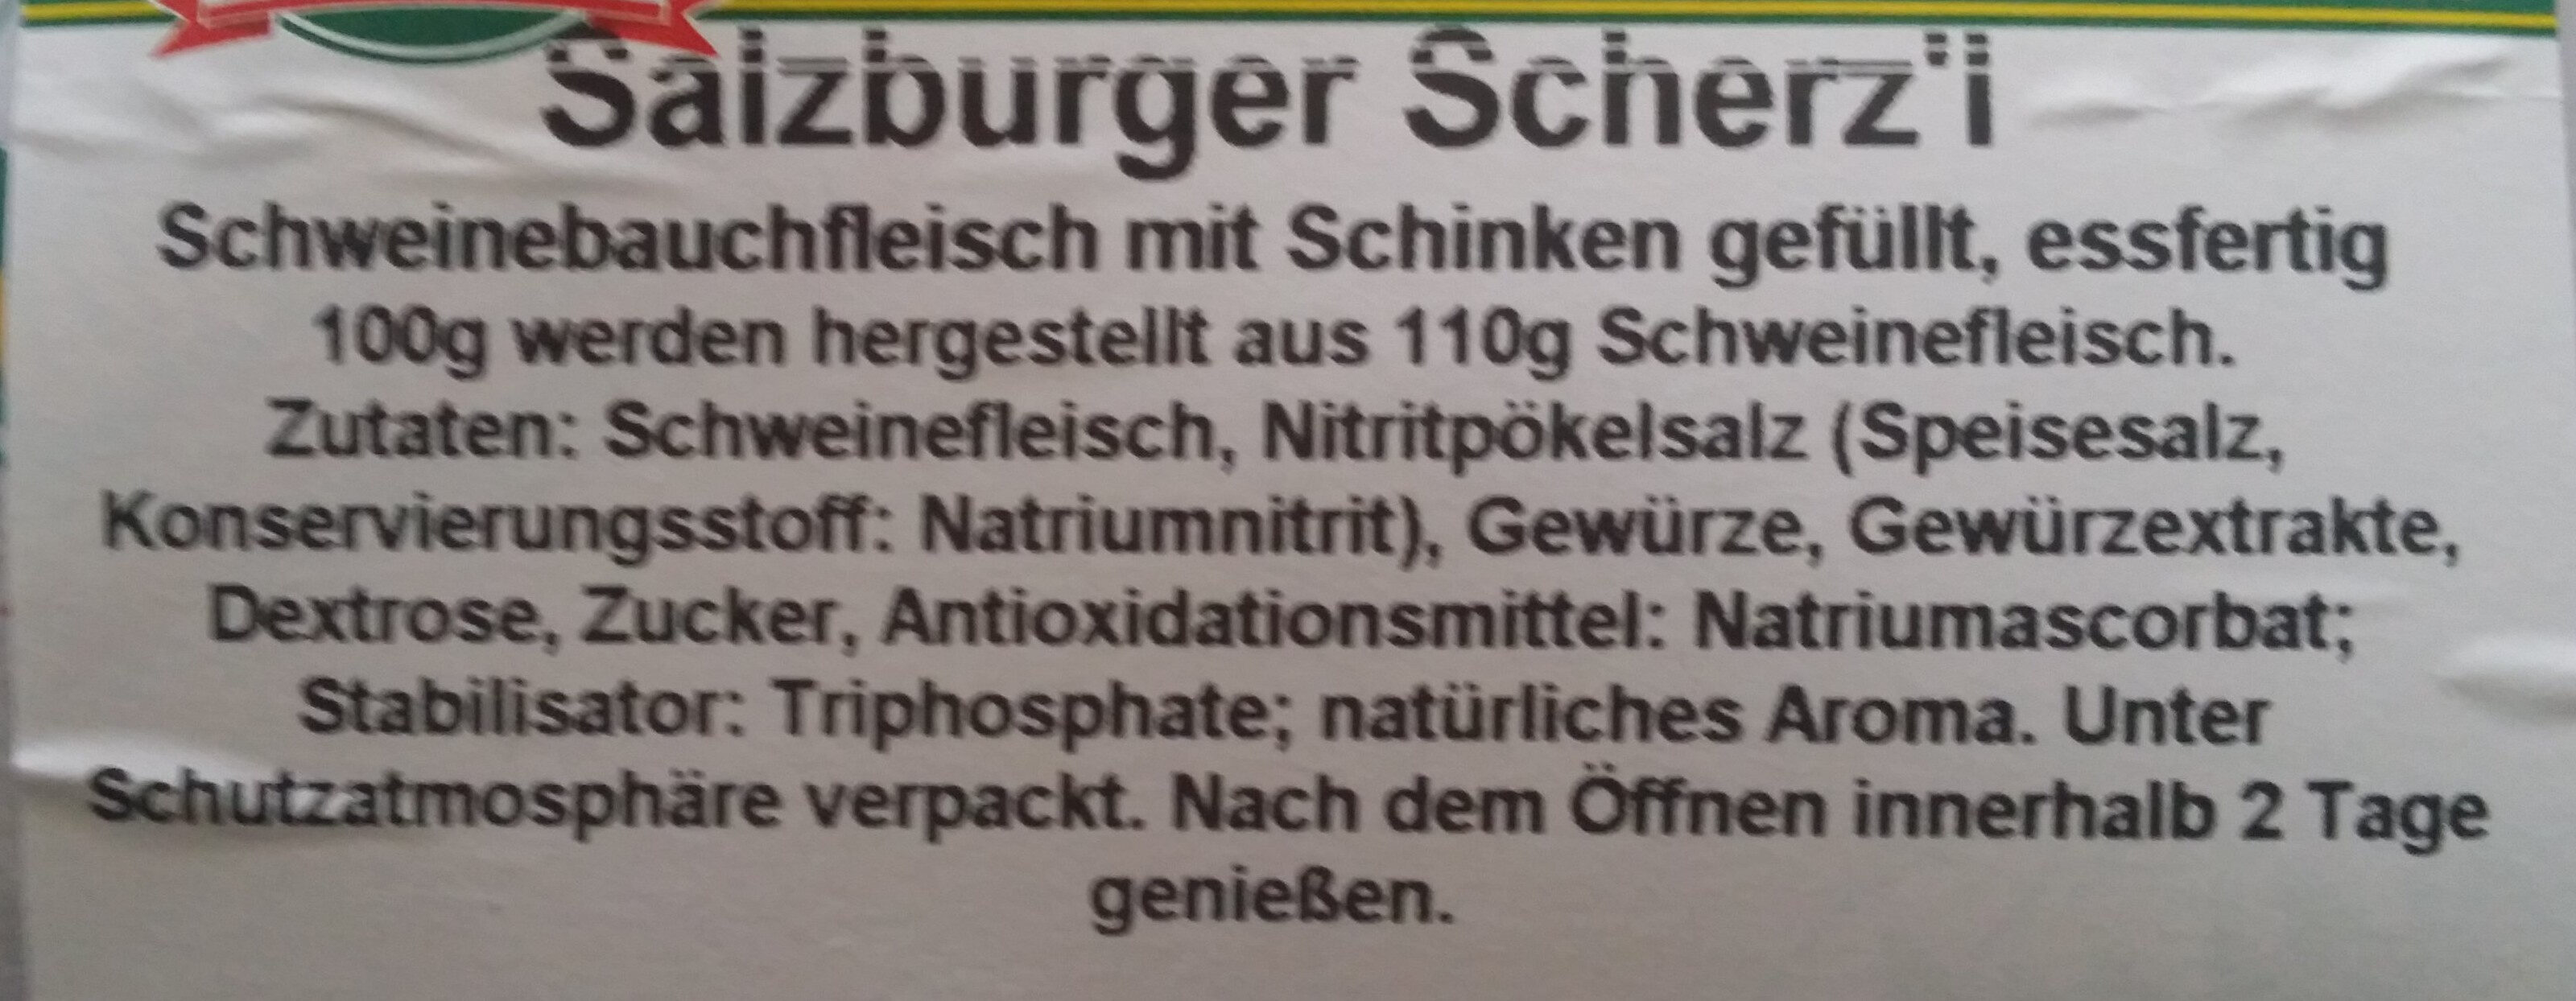 Salzburger Scherz'l - Ingredienser - de